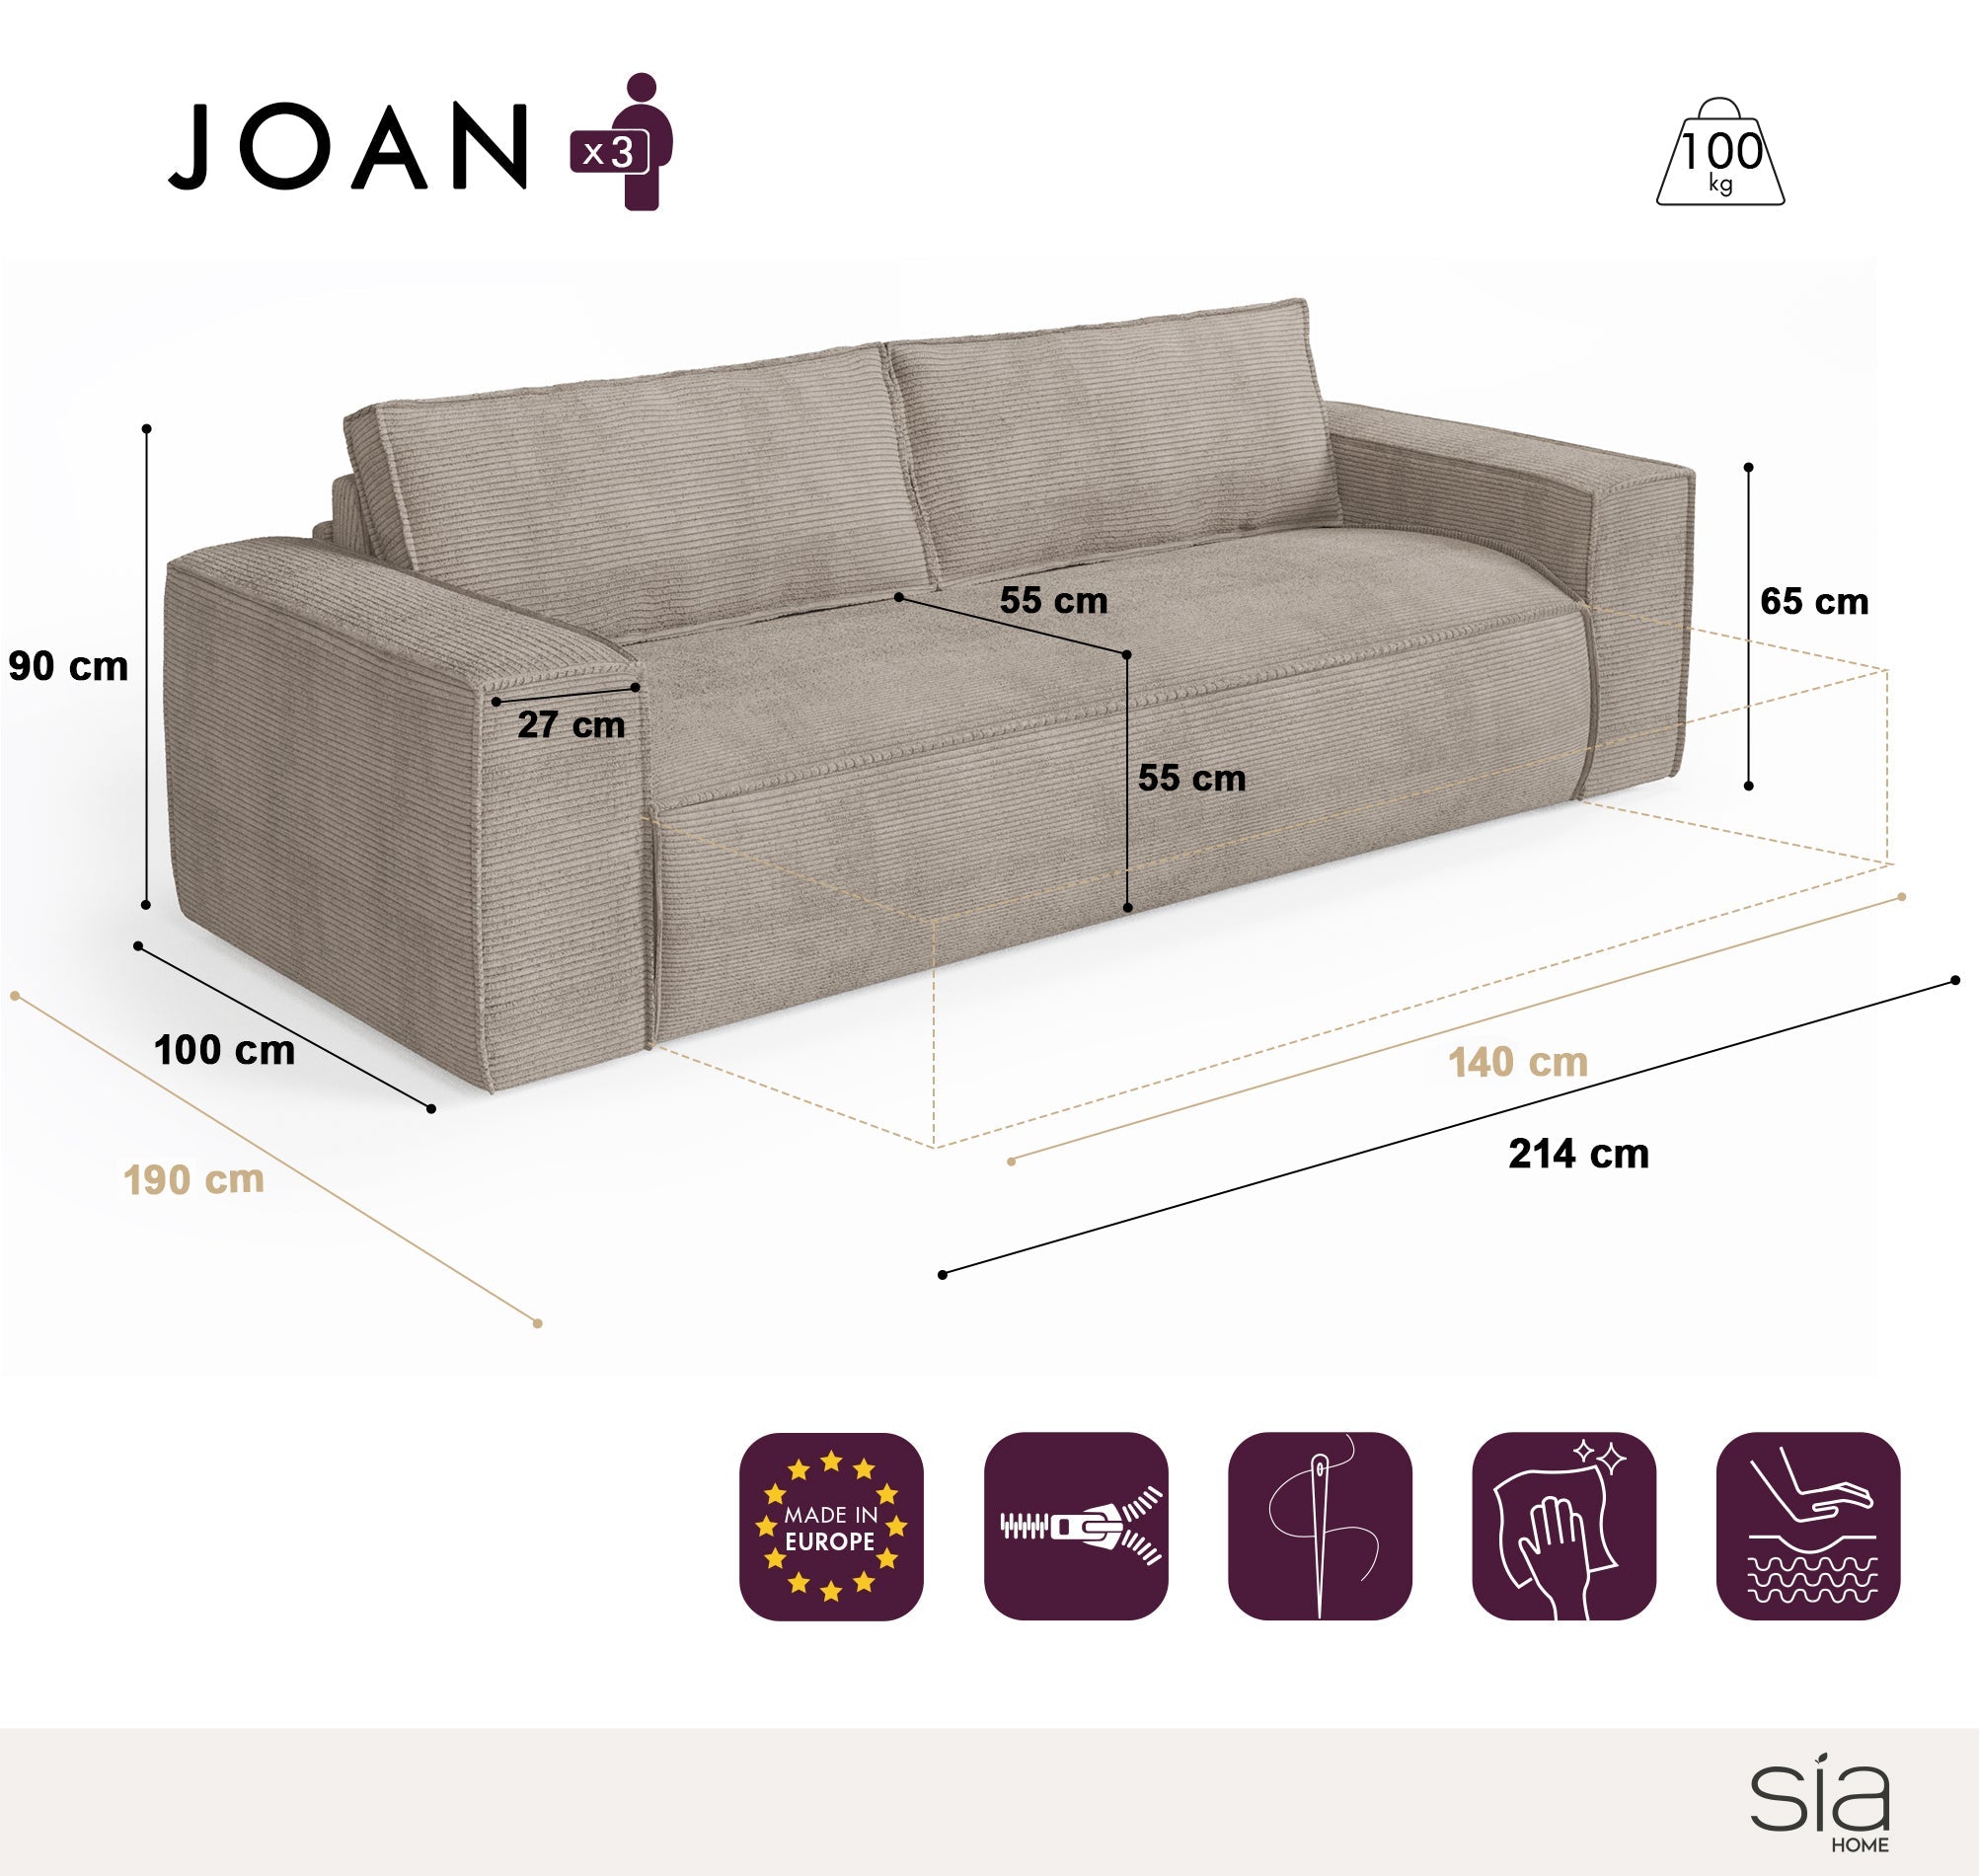 Canapé Convertible Joan